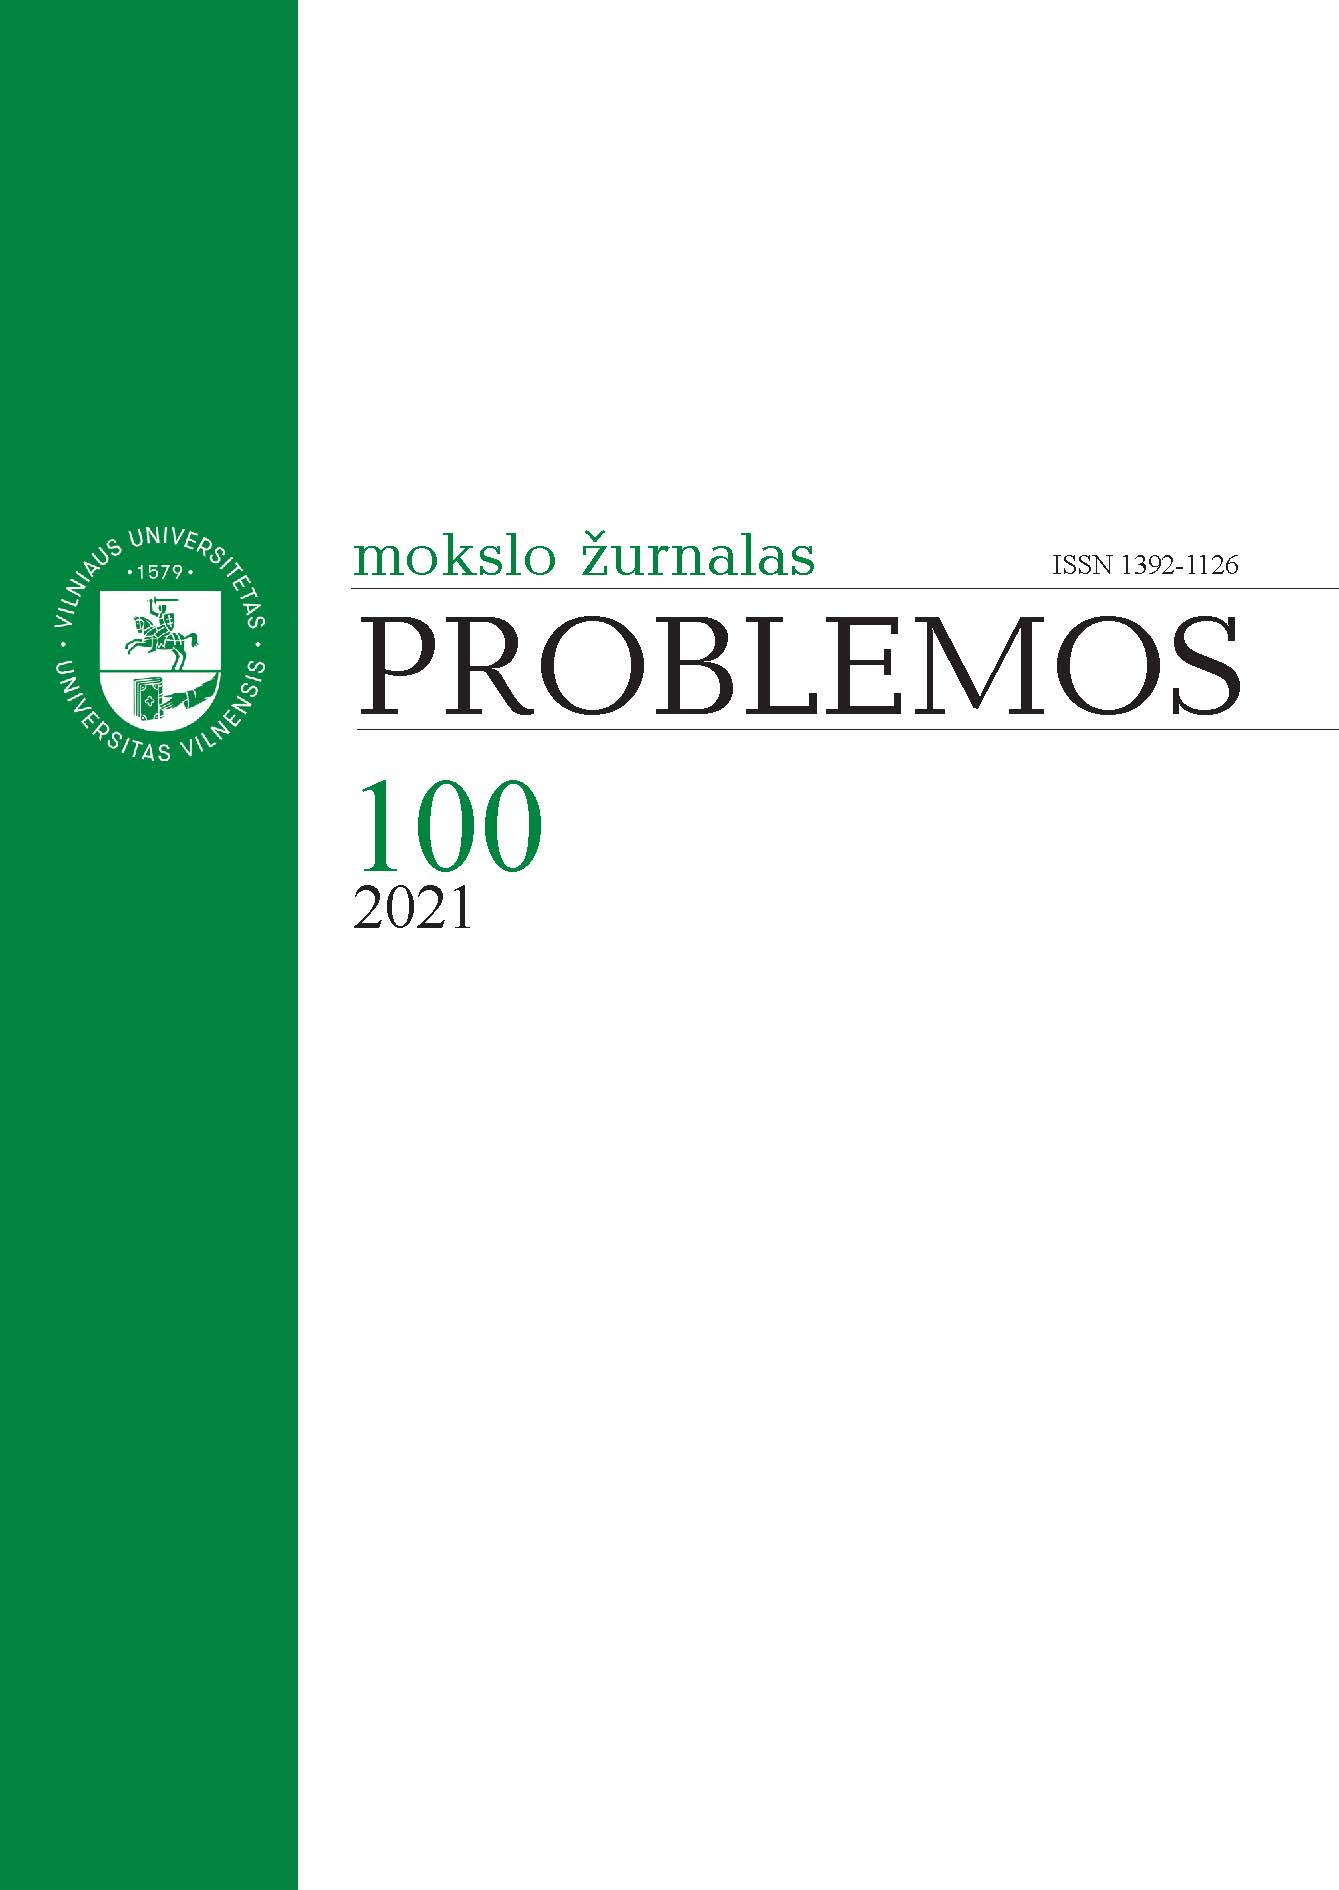 Problemos Cover Image